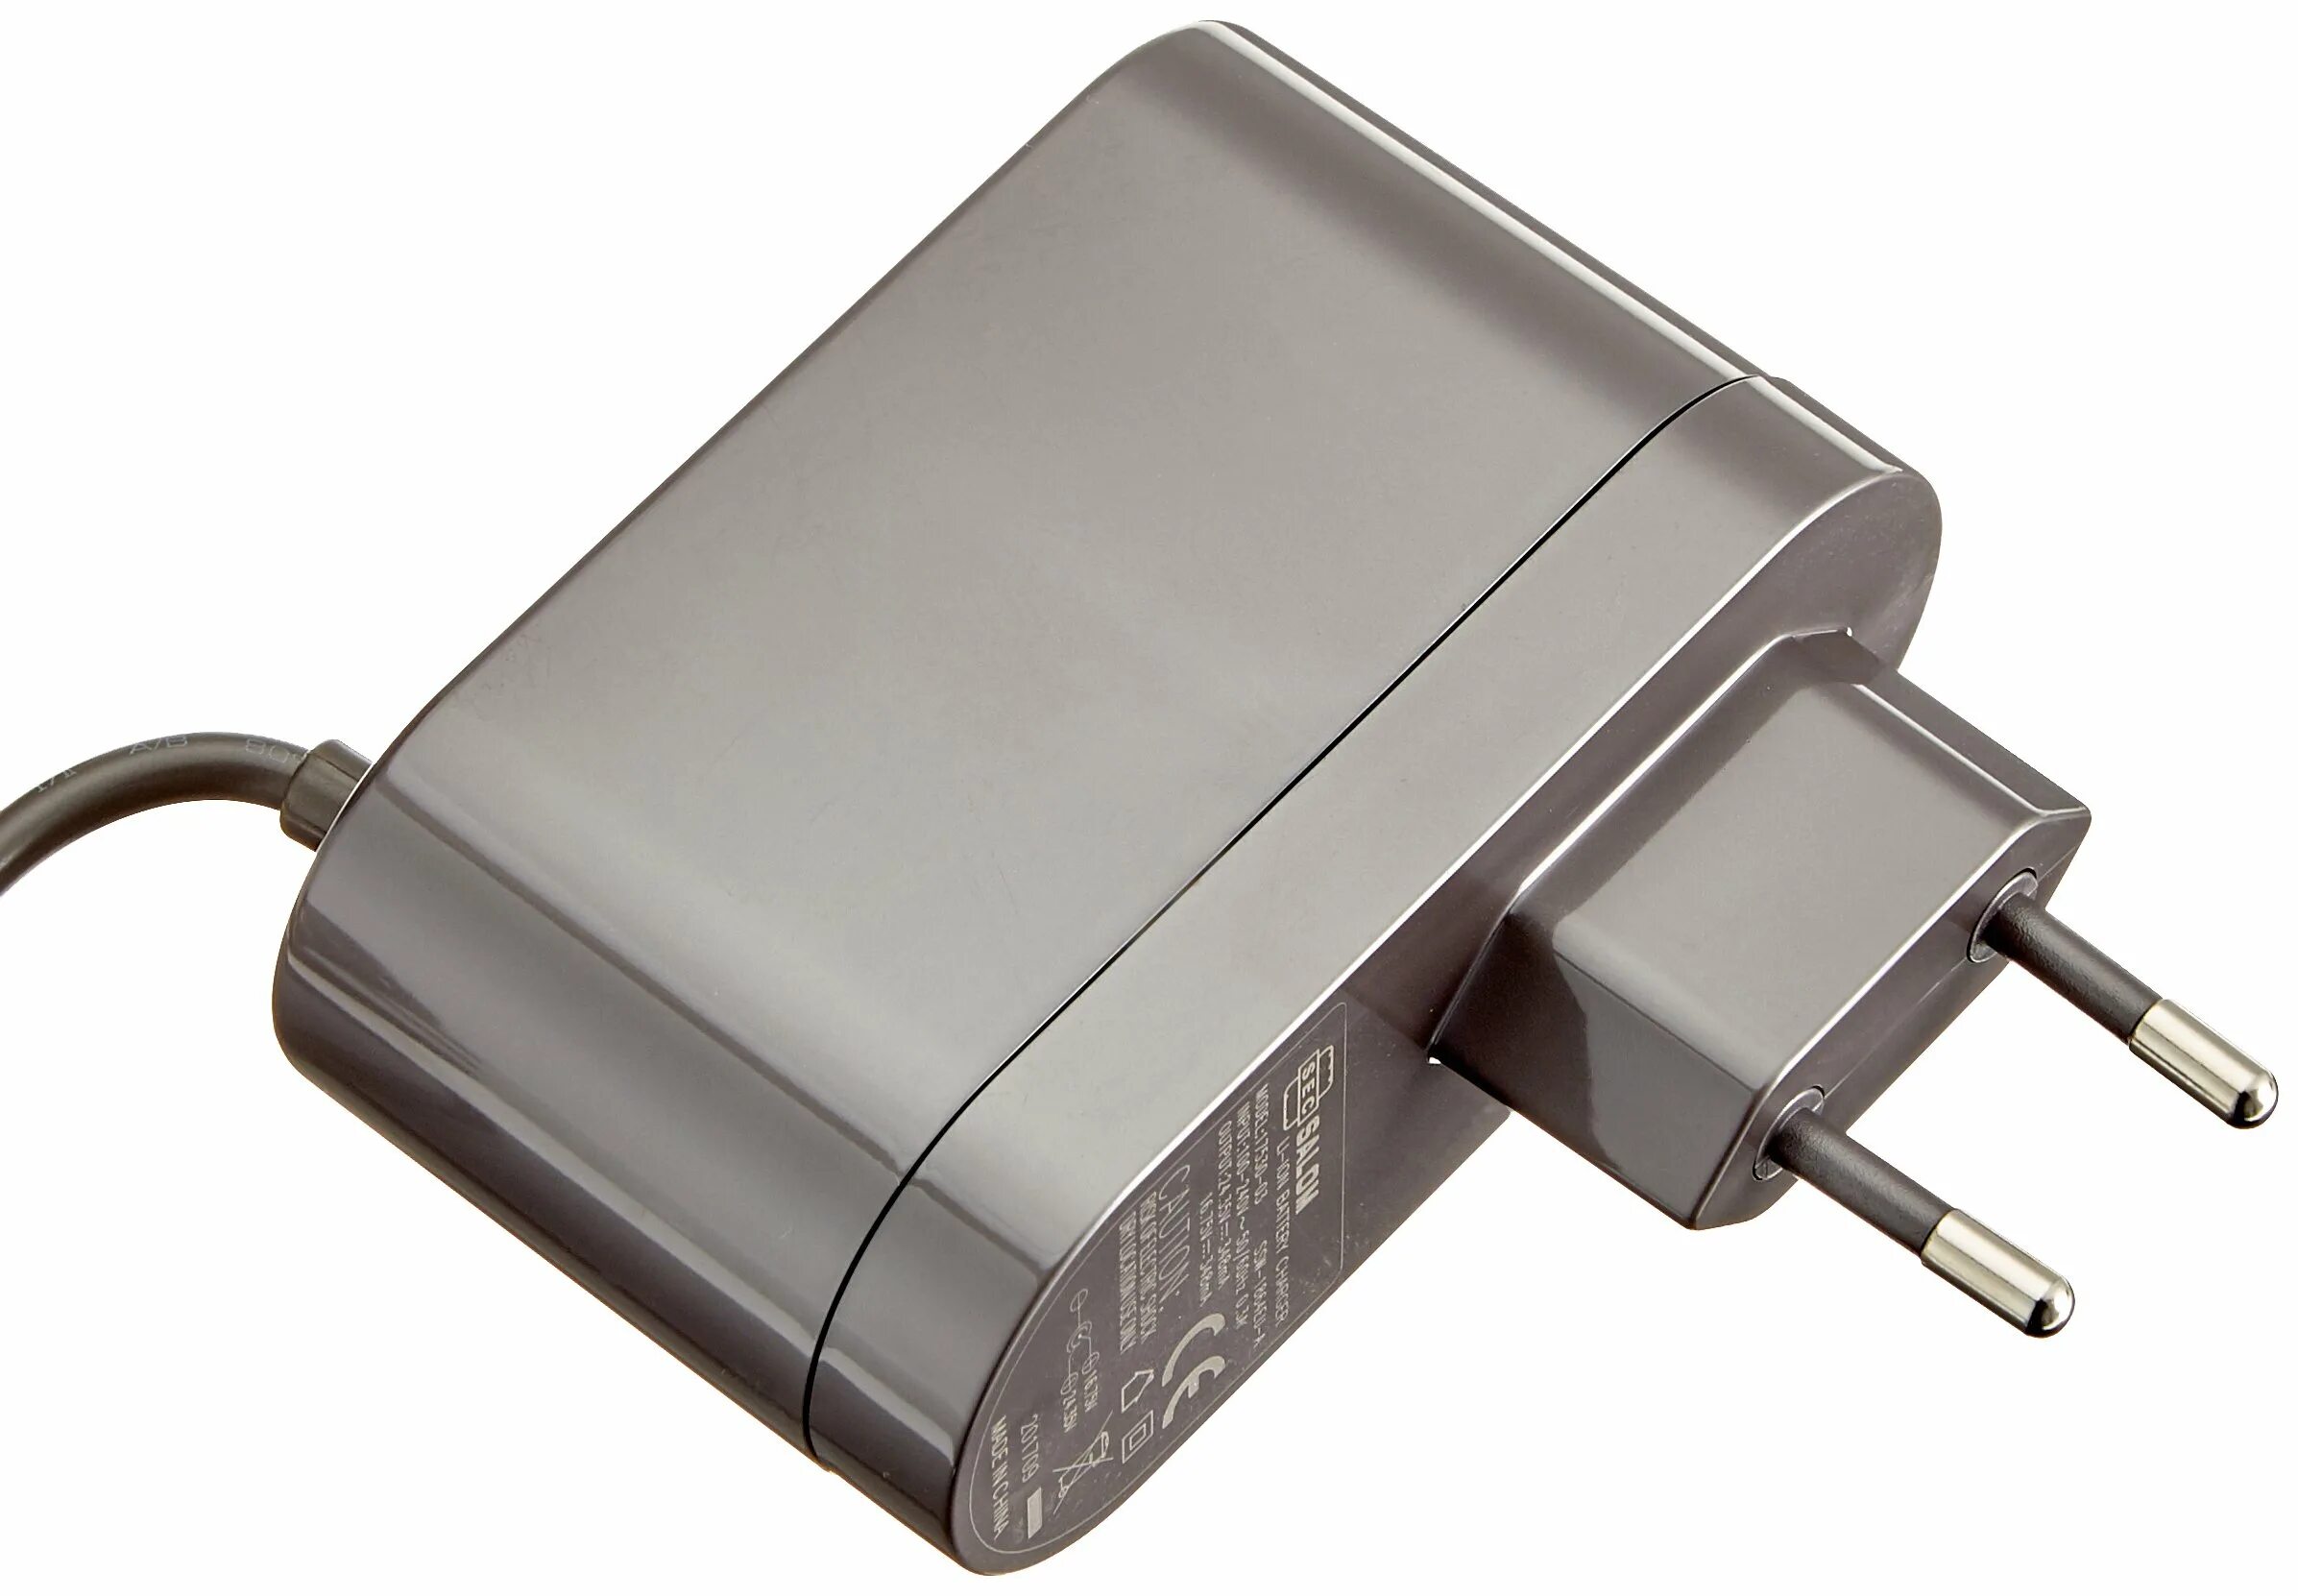 Зарядное дайсон. Battery Charger Dyson 205720-03. Dyson зарядное устройство 917530-12. Dc35. USB разветвитель Дайсон.